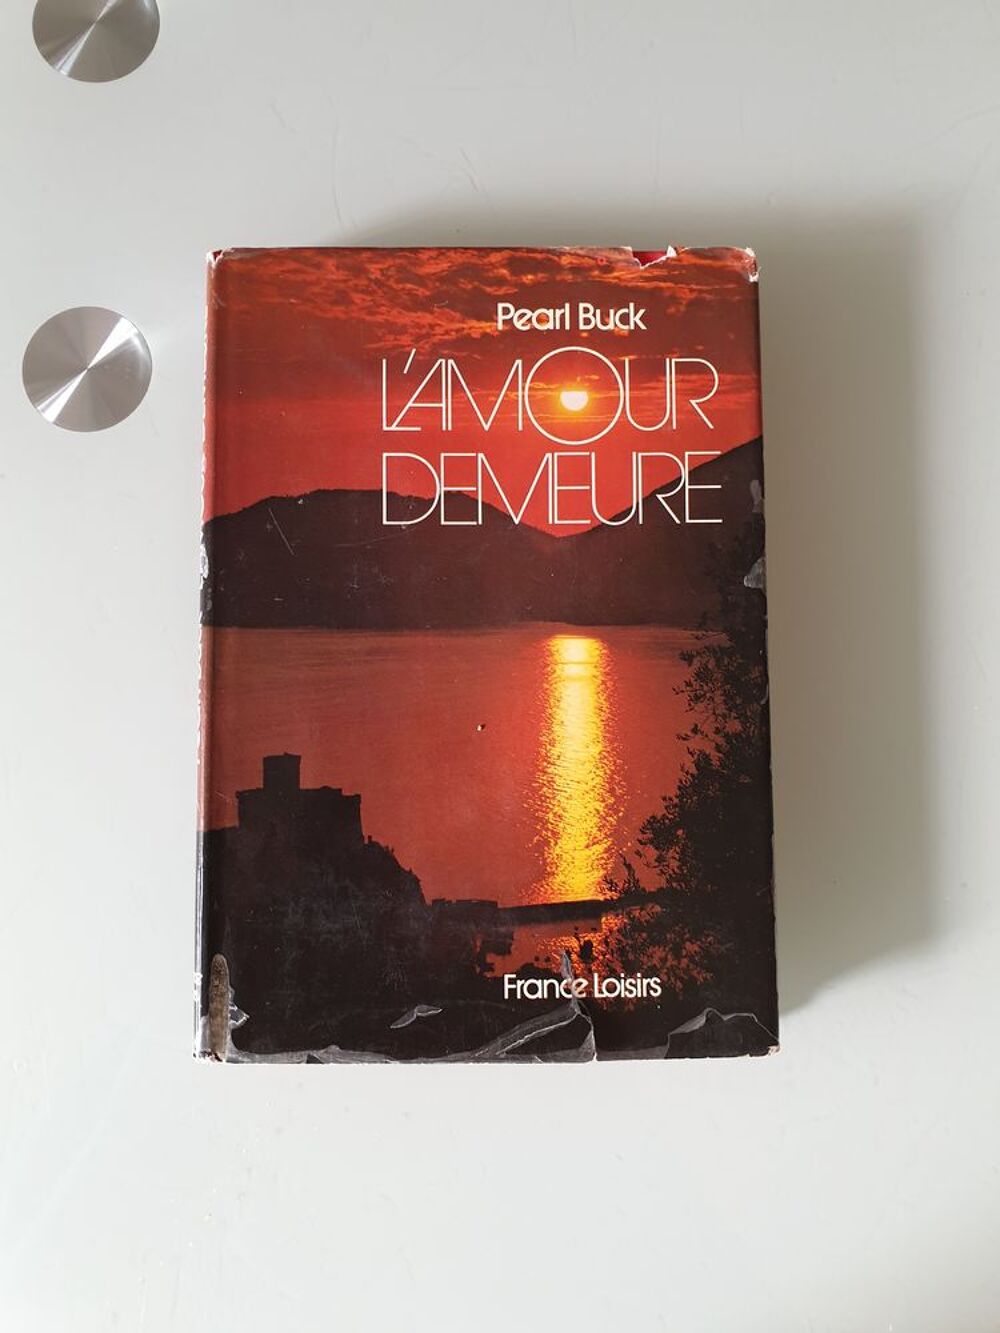 L'amour Demeure - pearl buck
Marseille 9 eme
Livres et BD